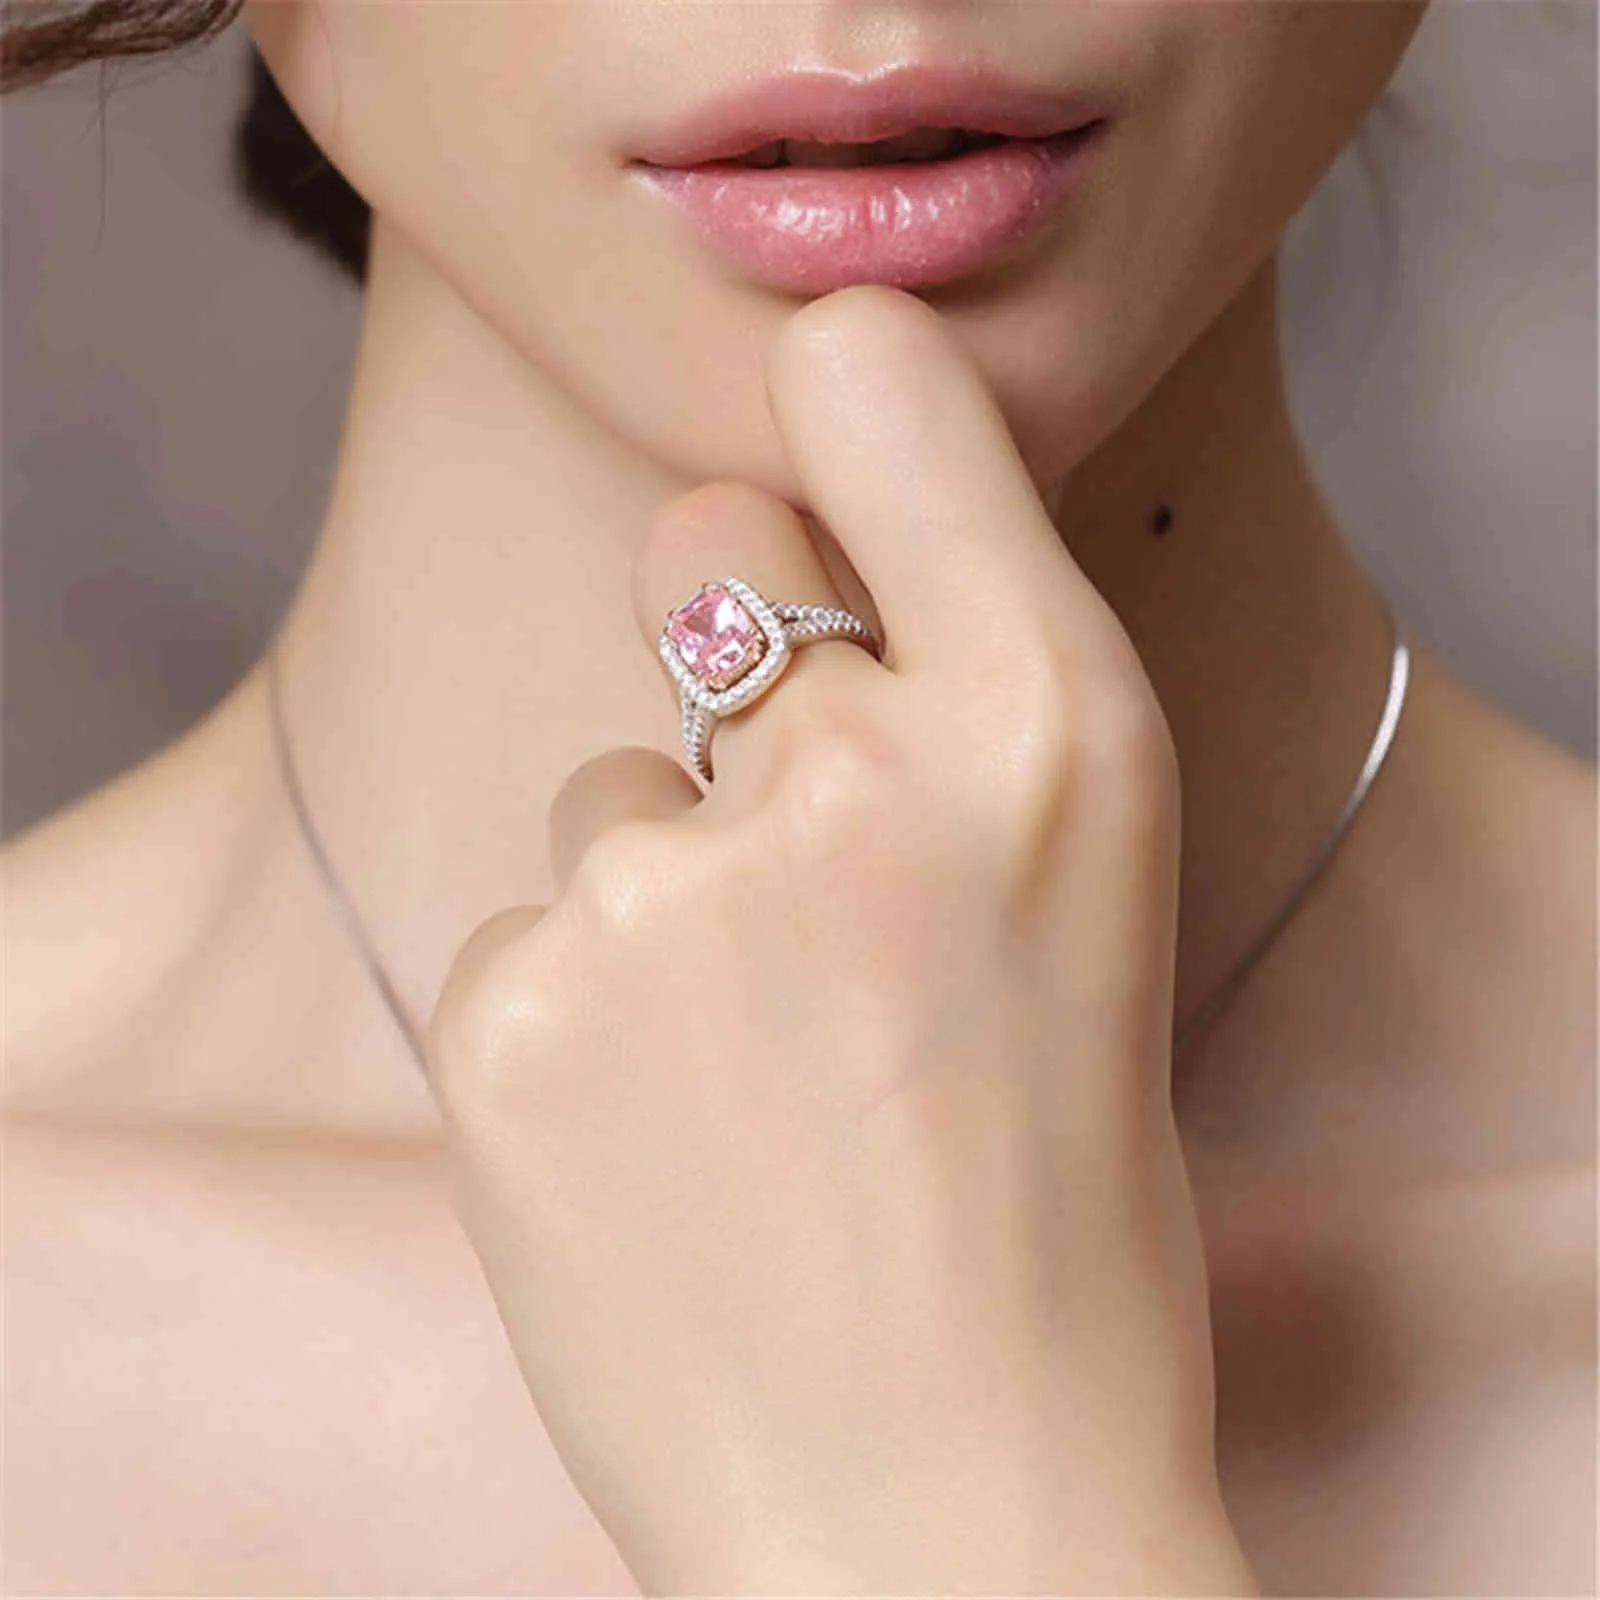 PANSYSEN 100% 솔리드 925 실버 반지 여성용 10x12mm 핑크 스피넬 다이아몬드 파인 쥬얼리 신부 웨딩 약혼 반지